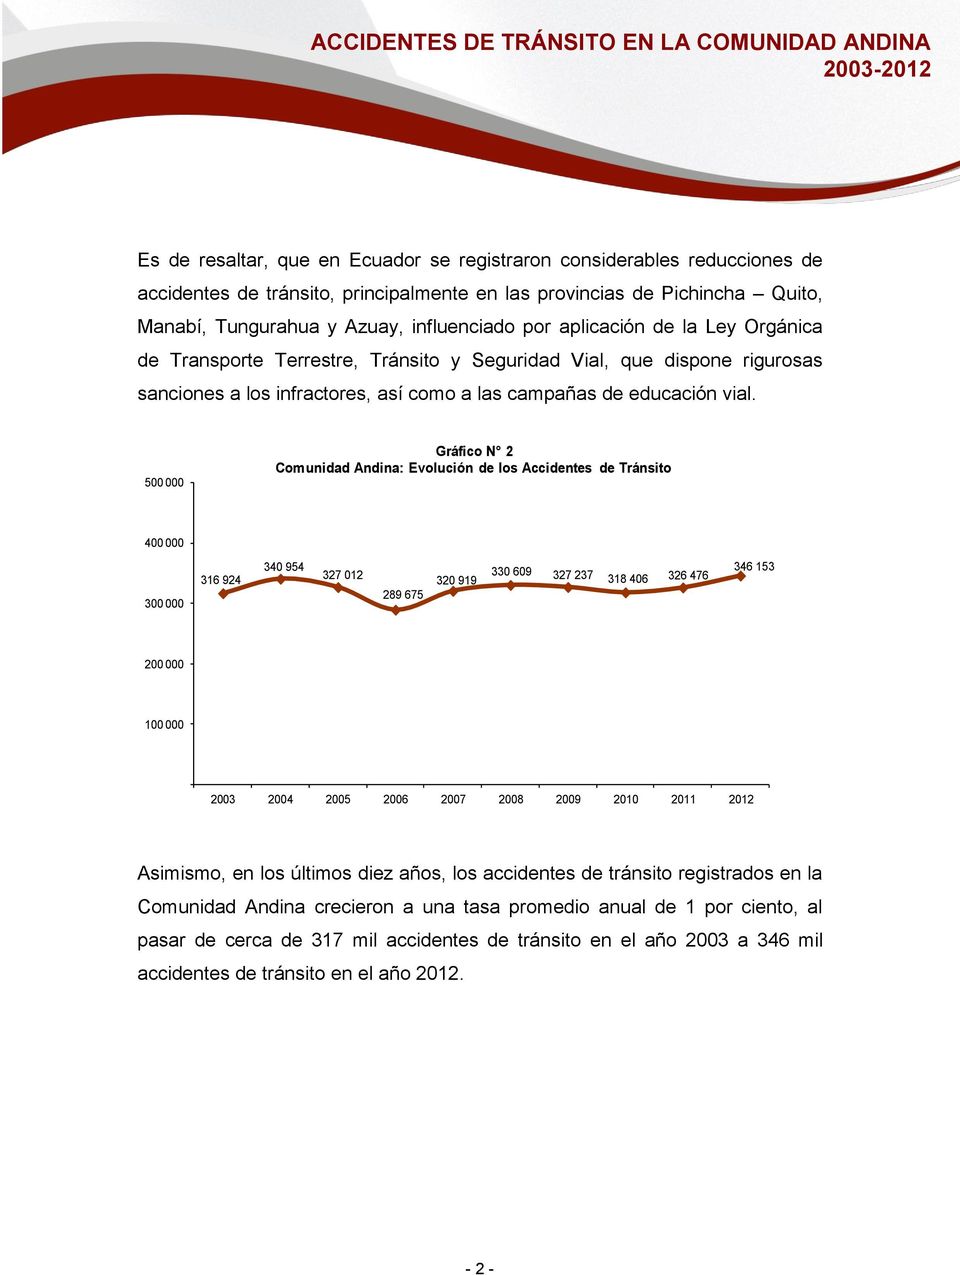 500 000 Gráfico N 2 Comunidad Andina: Evolución de los Accidentes de Tránsito 400 000 300 000 316 924 340 954 327 012 289 675 320 919 330 609 327 237 318 406 326 476 346 153 200 000 100 000 2003 2004